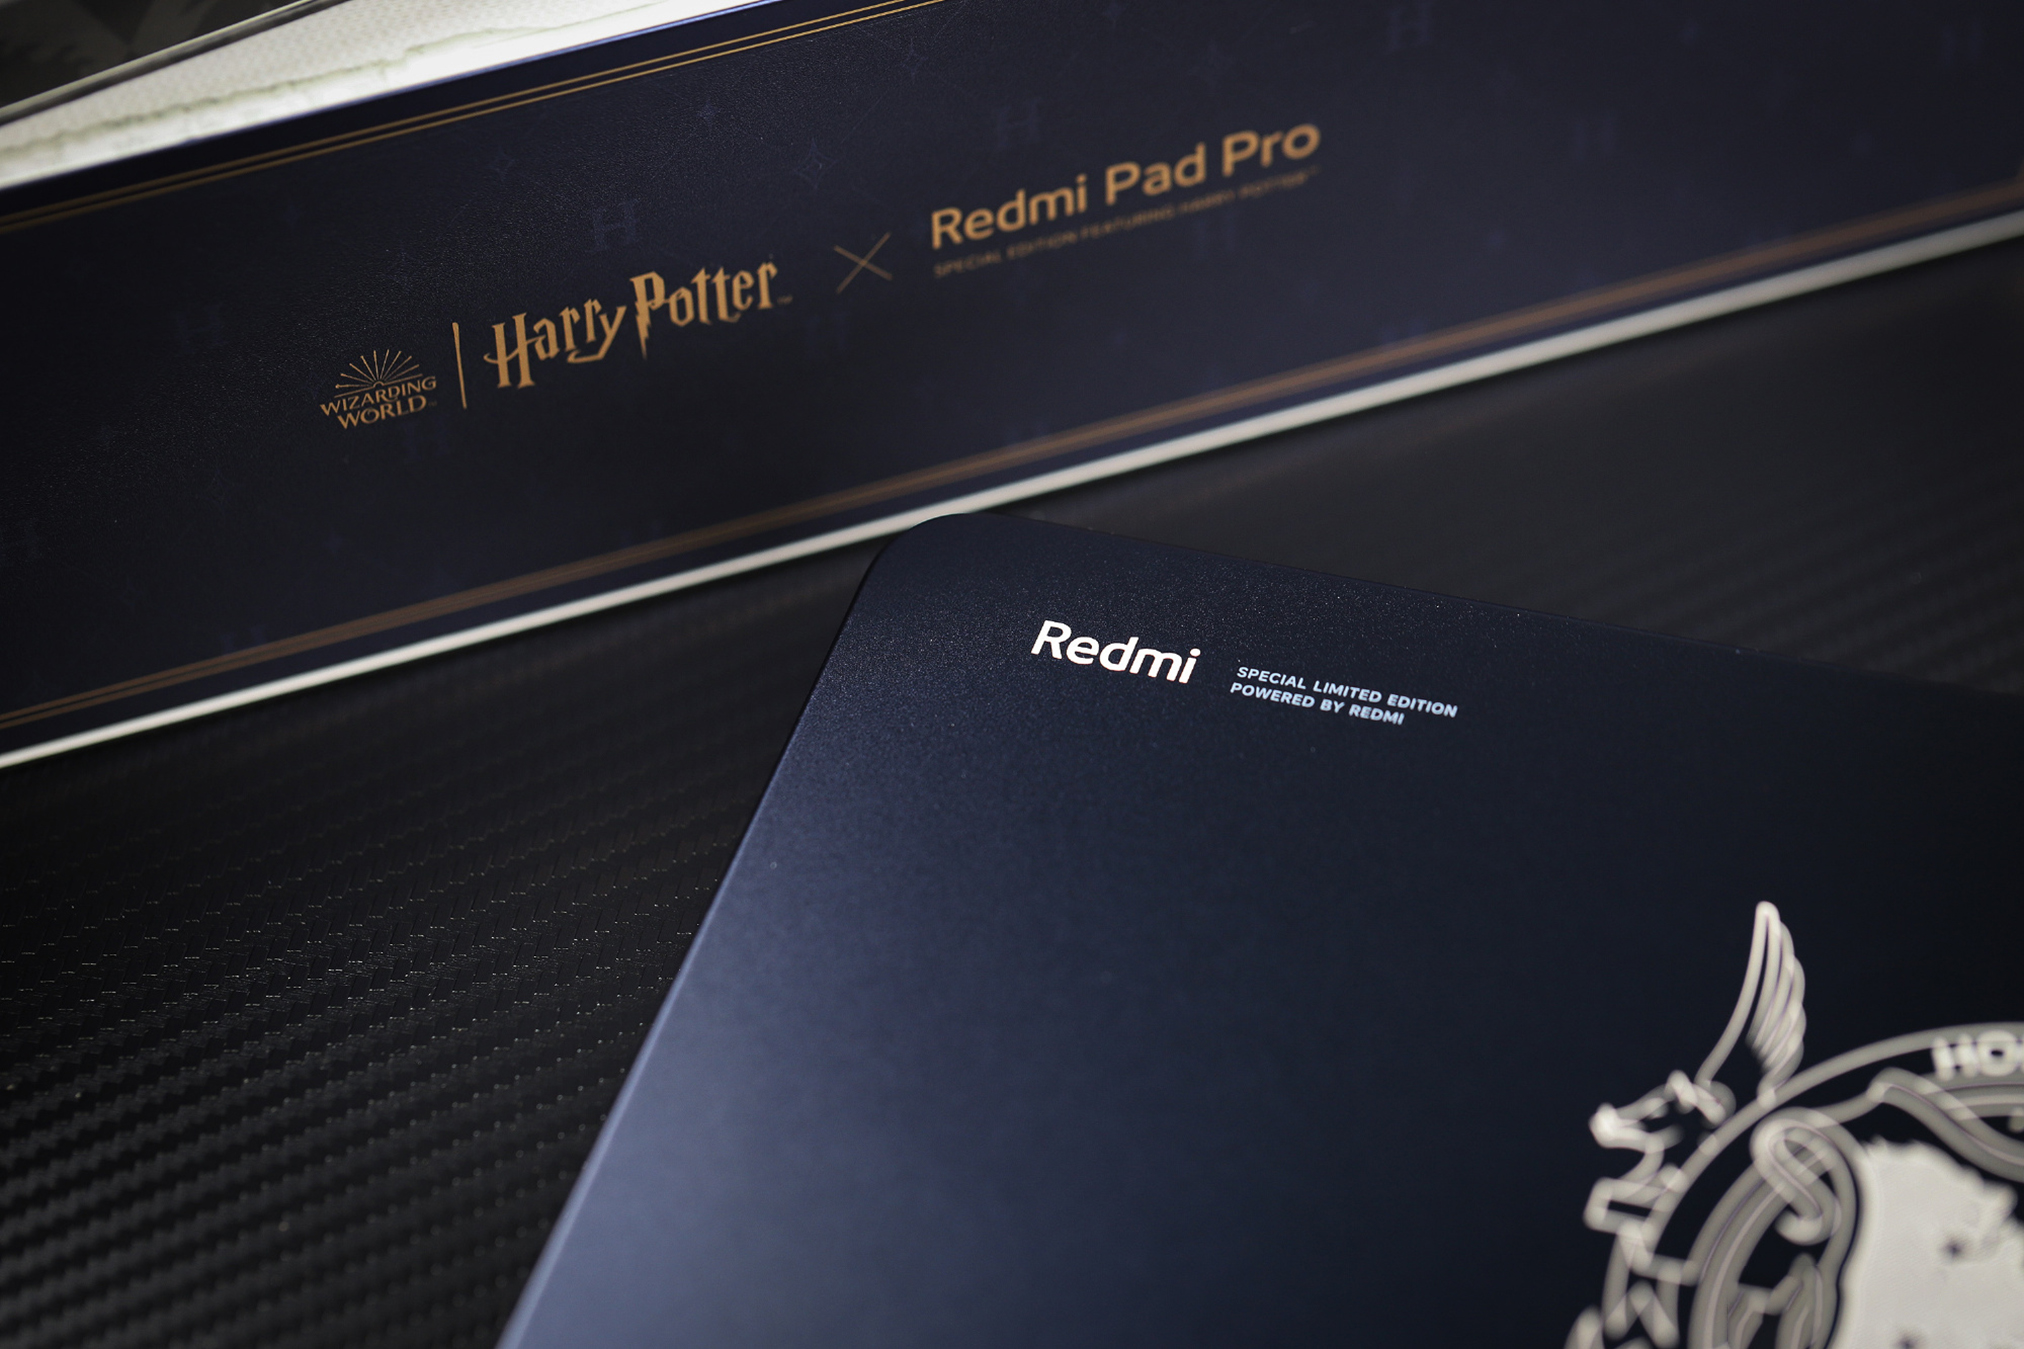 Cận cảnh máy tính bảng 12 inch giá rẻ của Xiaomi: Thiết kế đẹp như iPad, có cả bản Harry Potter đặc biệt cho các Potterheads mà giá chỉ hơn 5 triệu đồng- Ảnh 28.